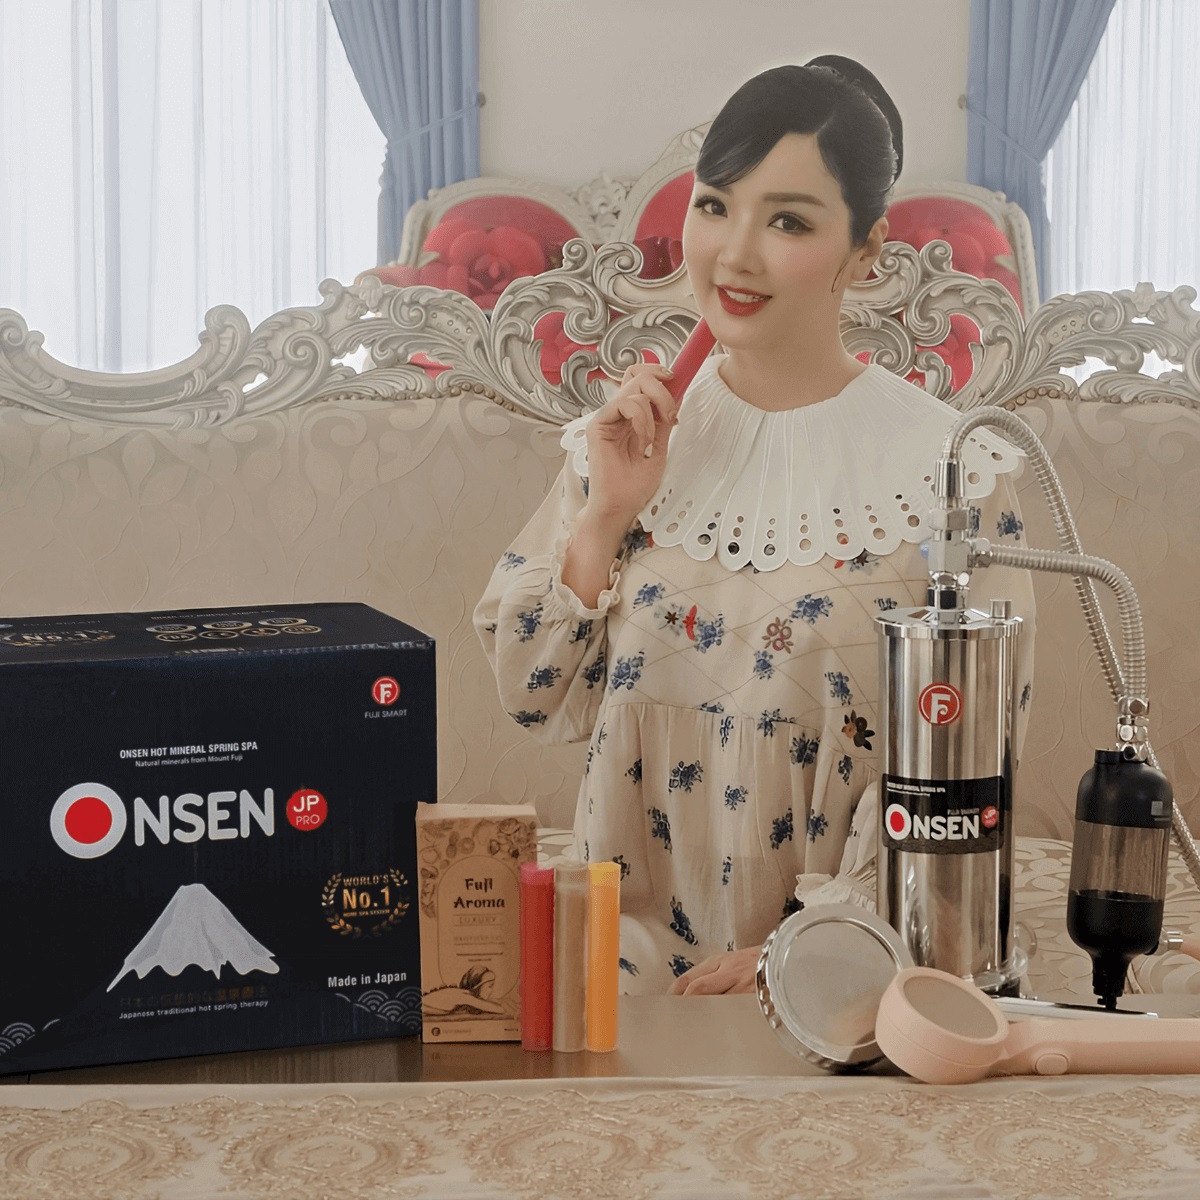 Hoa hậu Giáng My tin chọn máy tắm Onsen Fuji Smart JP Pro